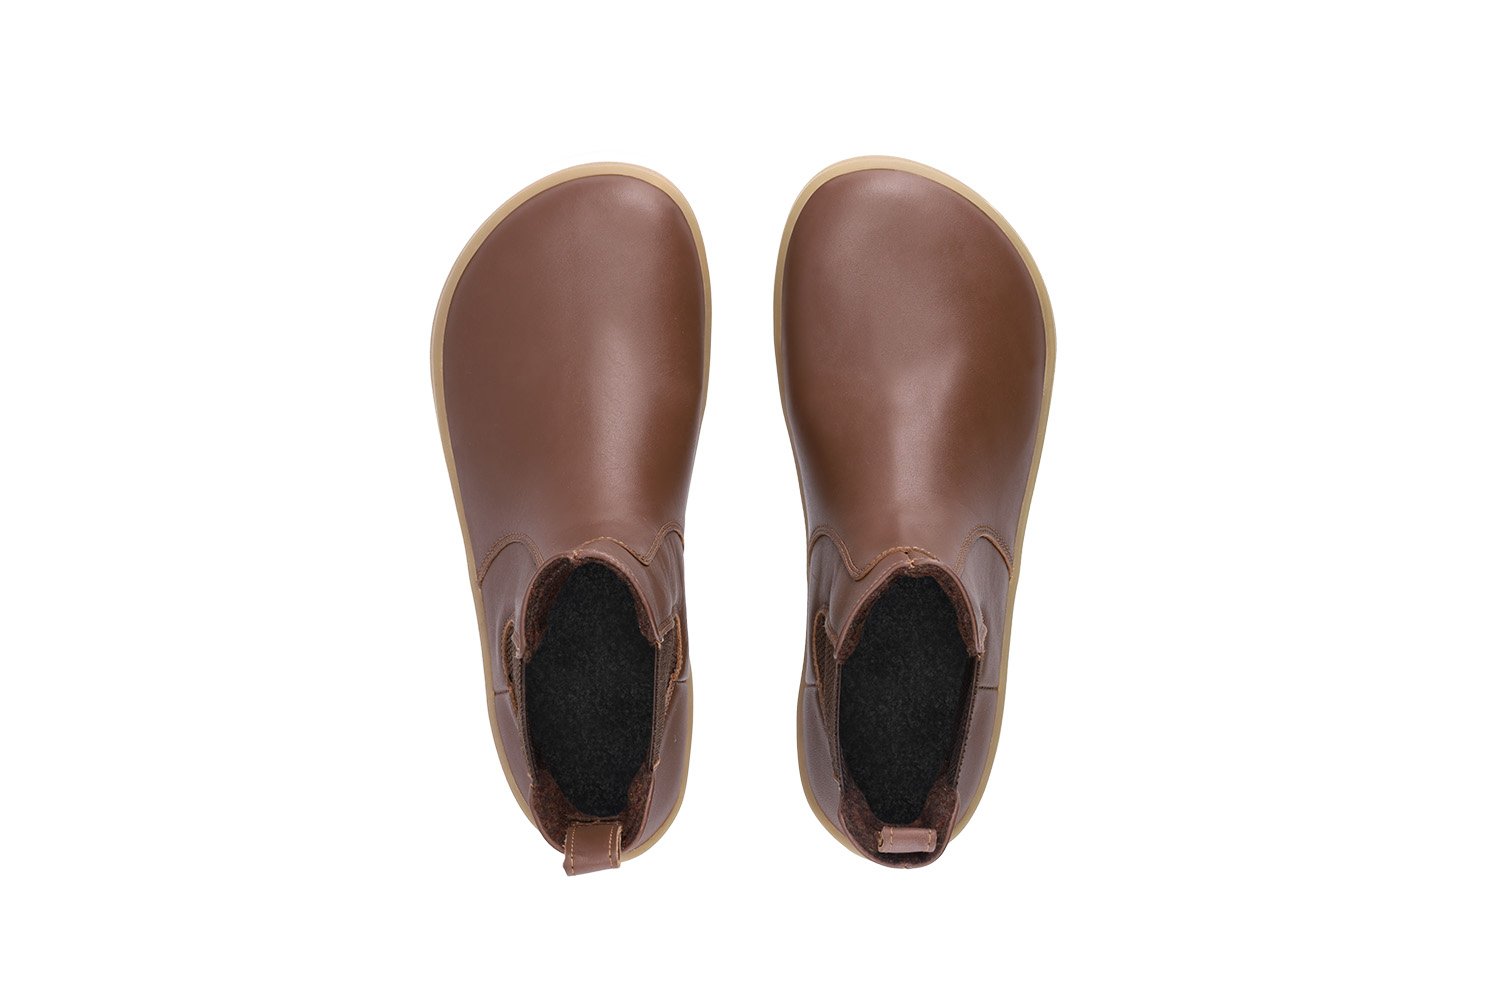 Barefoot Boots Be Lenka Entice Dark Brown | Be Lenka